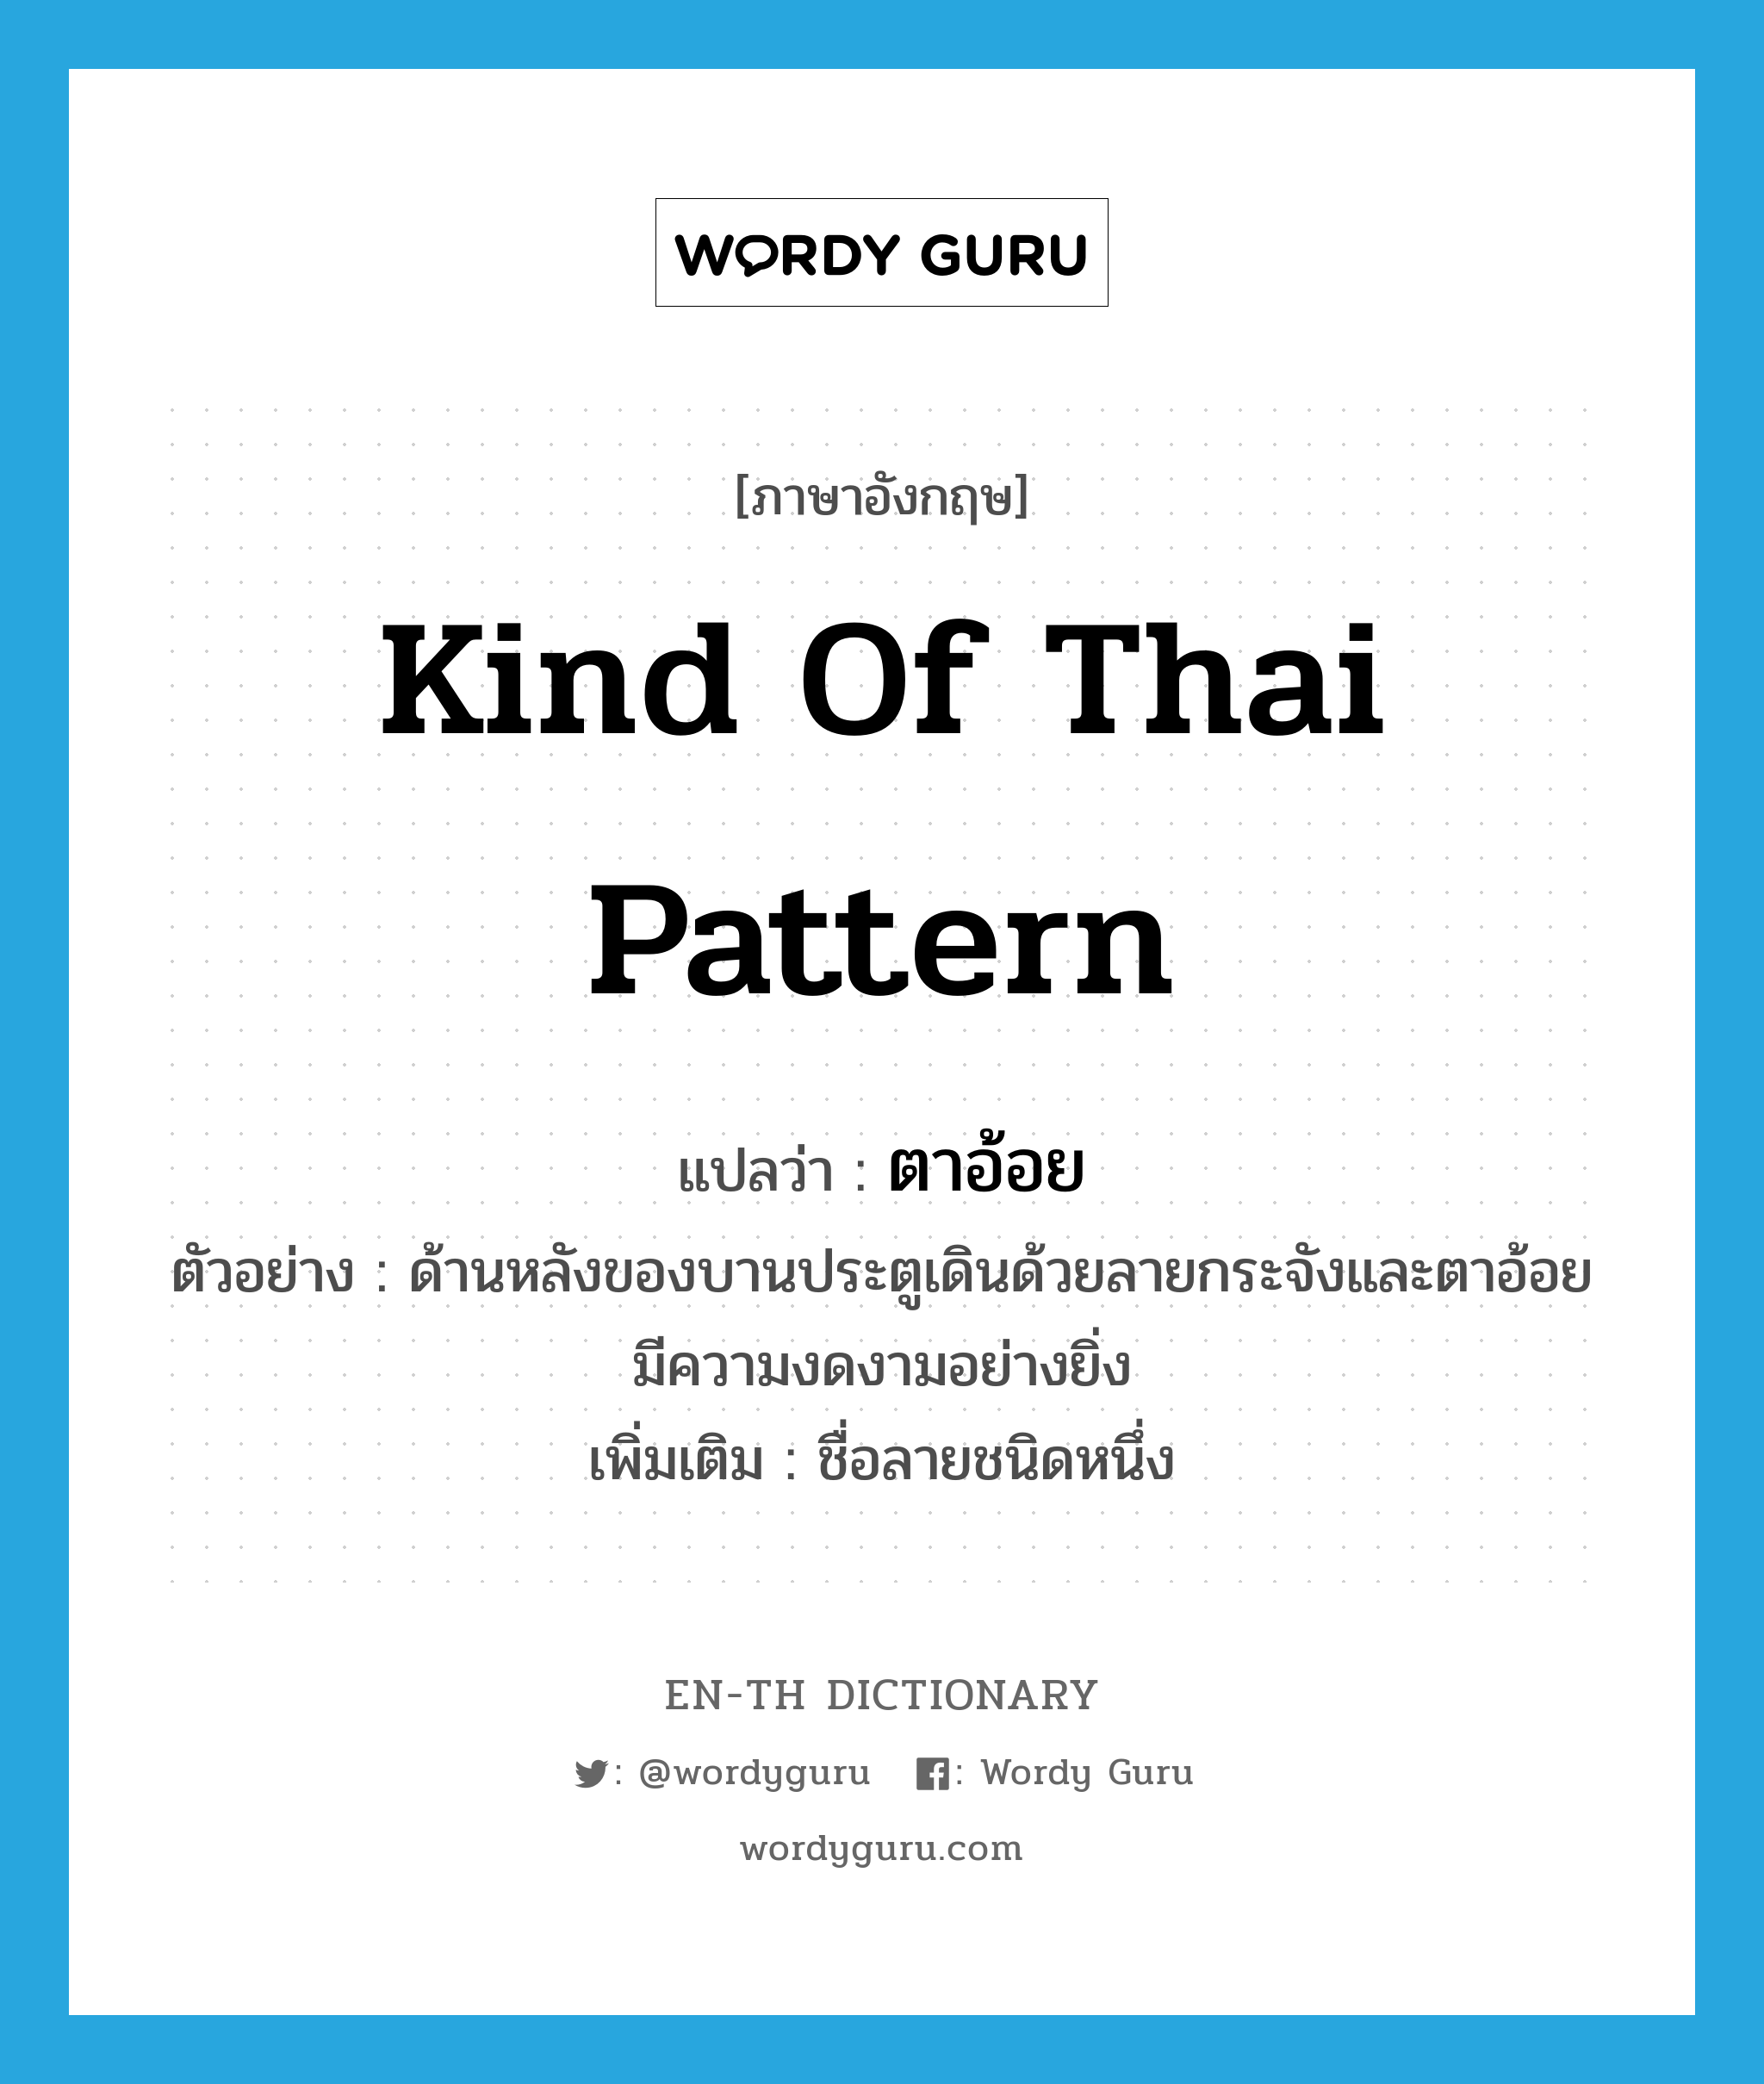 kind of Thai pattern แปลว่า?, คำศัพท์ภาษาอังกฤษ kind of Thai pattern แปลว่า ตาอ้อย ประเภท N ตัวอย่าง ด้านหลังของบานประตูเดินด้วยลายกระจังและตาอ้อย มีความงดงามอย่างยิ่ง เพิ่มเติม ชื่อลายชนิดหนึ่ง หมวด N